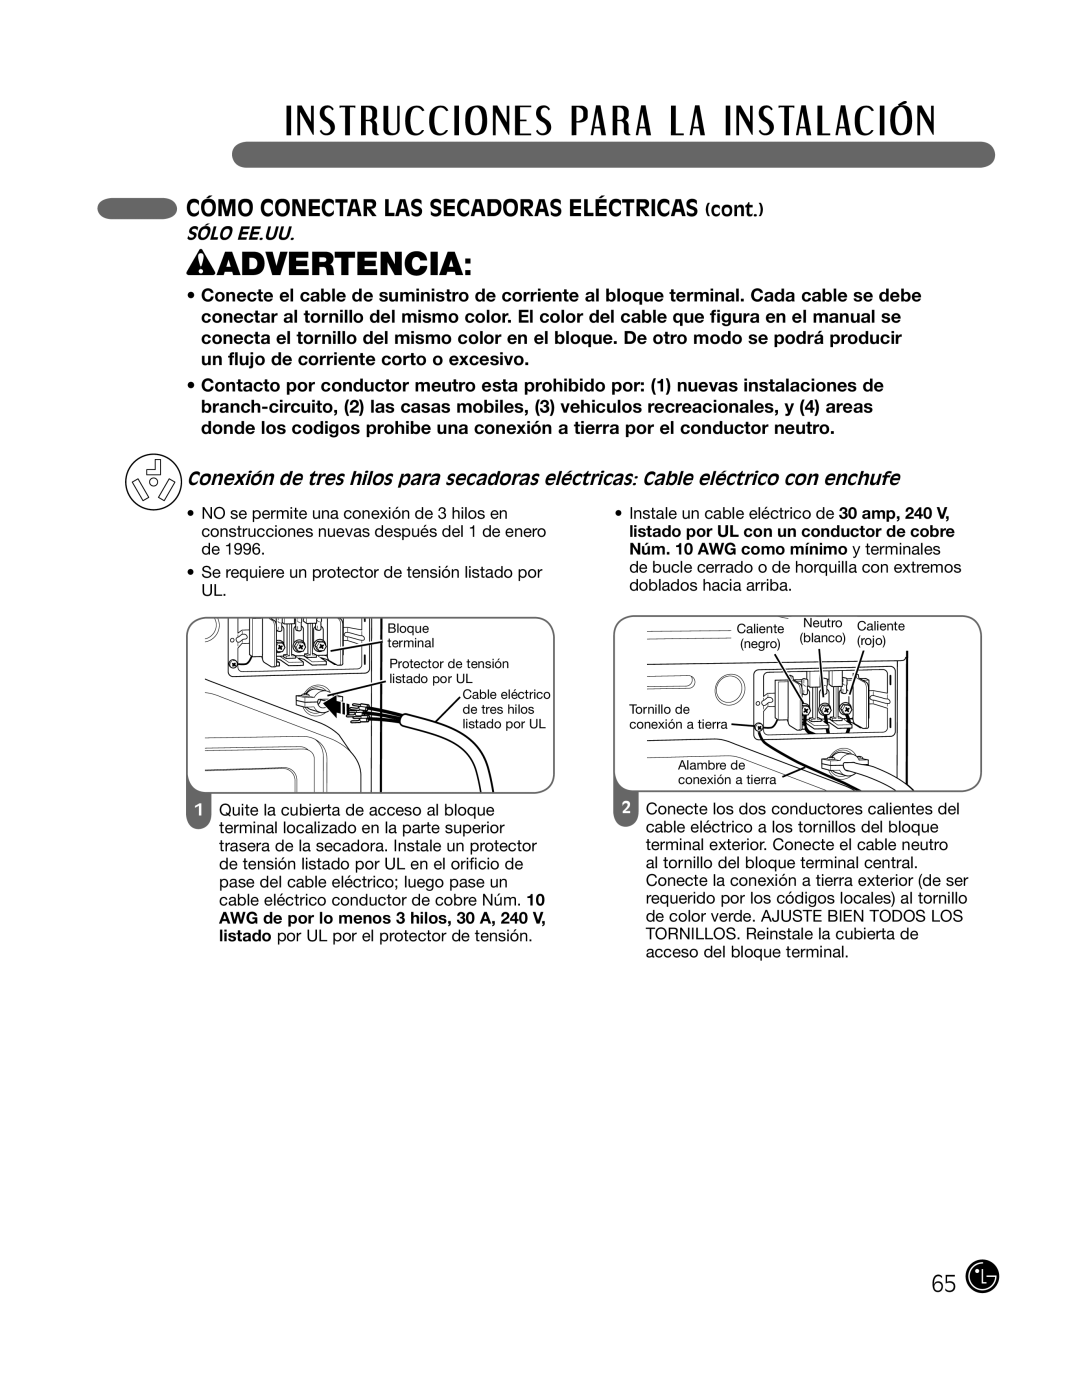 LG Electronics P154 manual wADVERTENCIA, CÓMO CONECTAR LAS SECADORAS ELÉCTRICAS cont, Sólo Ee.Uu 